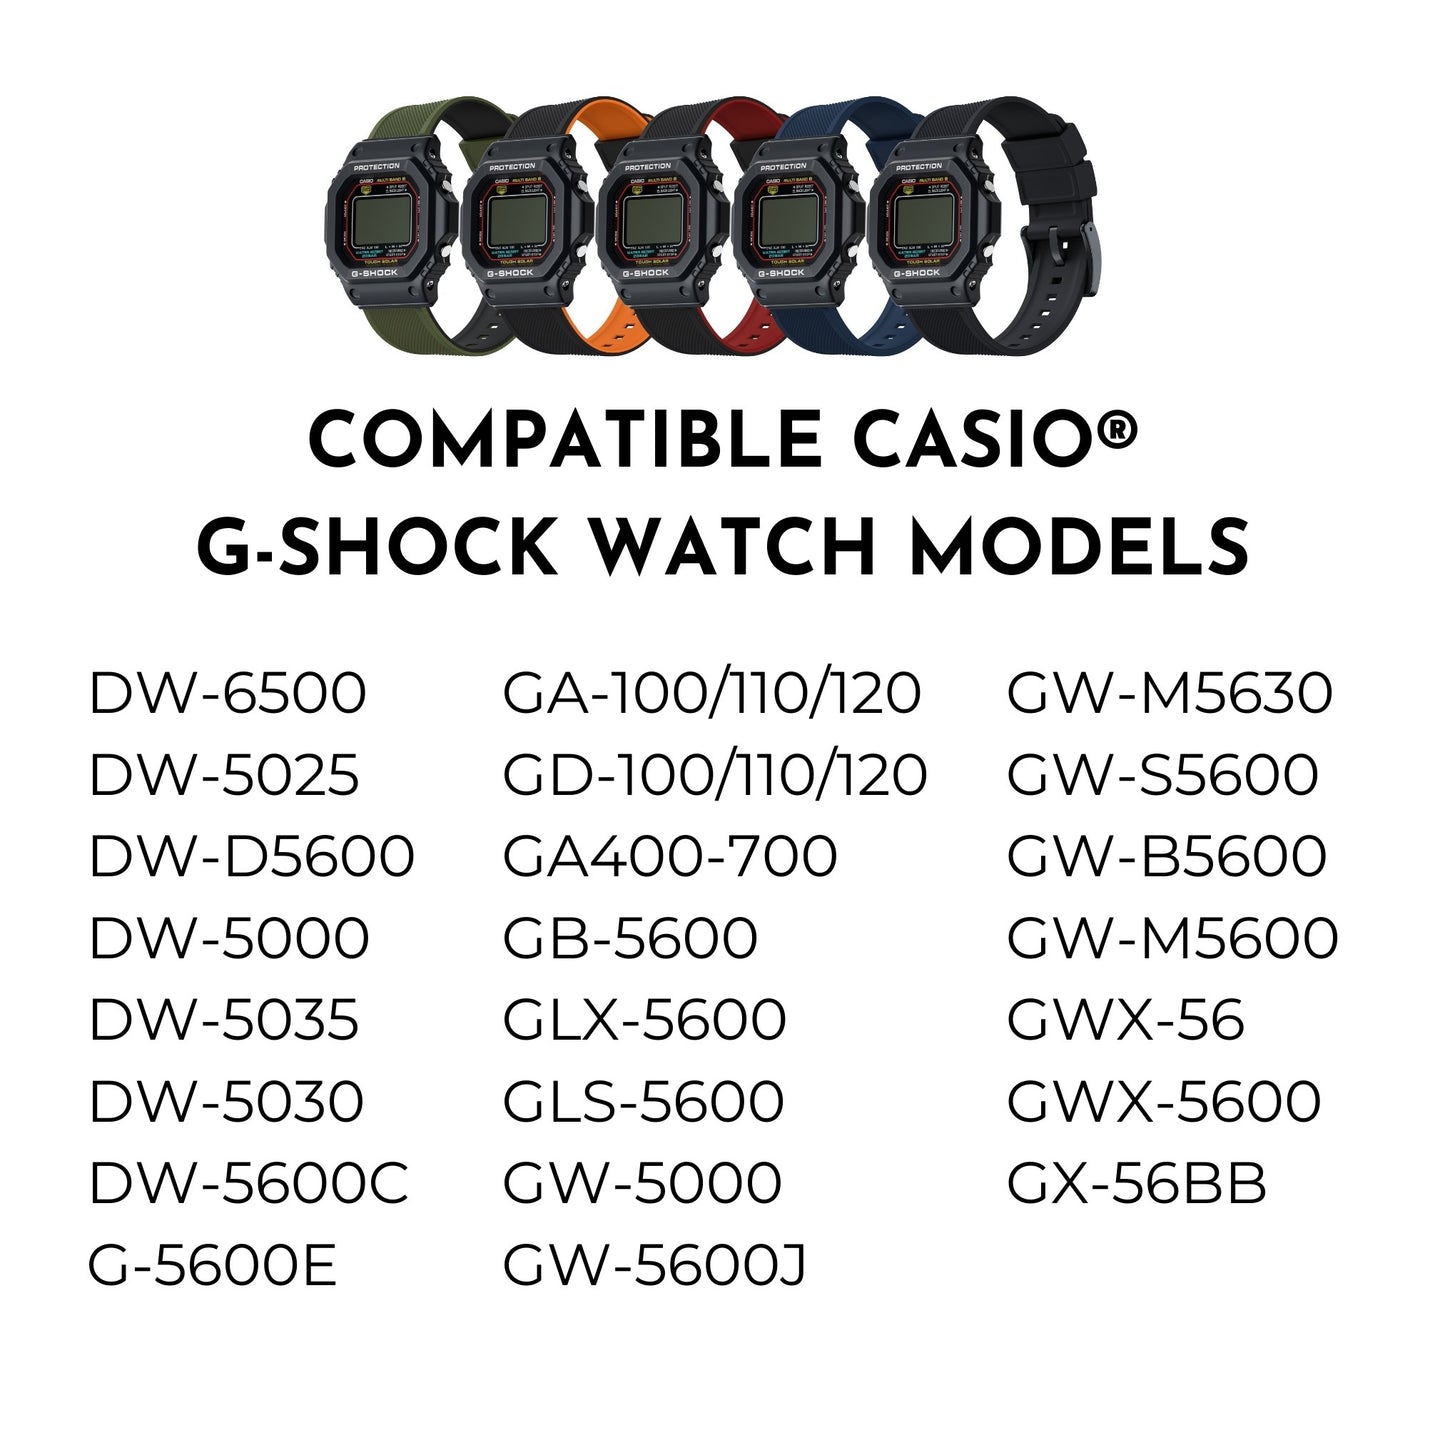 Navy Blue Elite Silicone Casio® G-Shock Watch Band